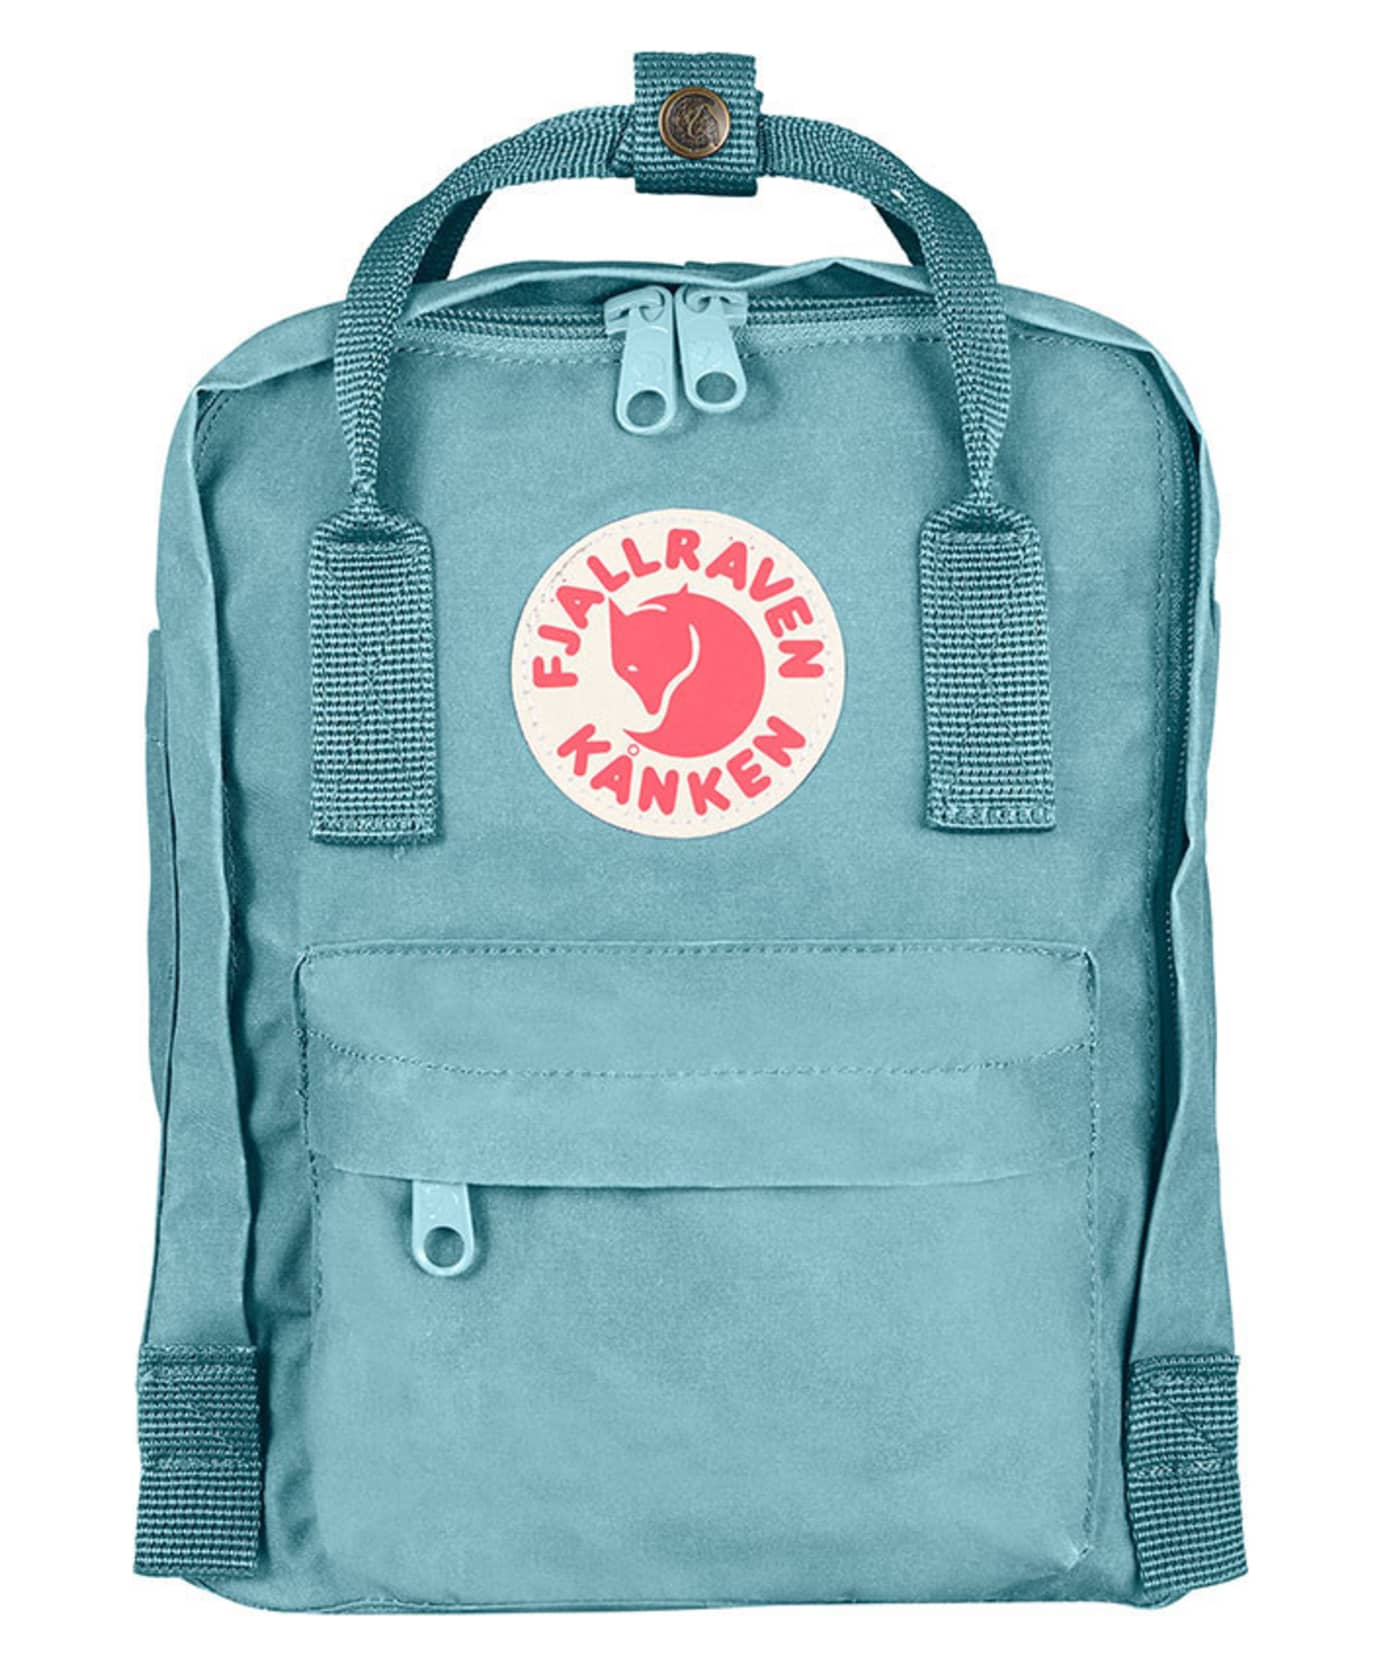 Fjallraven Kanken Mini Backpack Sky Blue